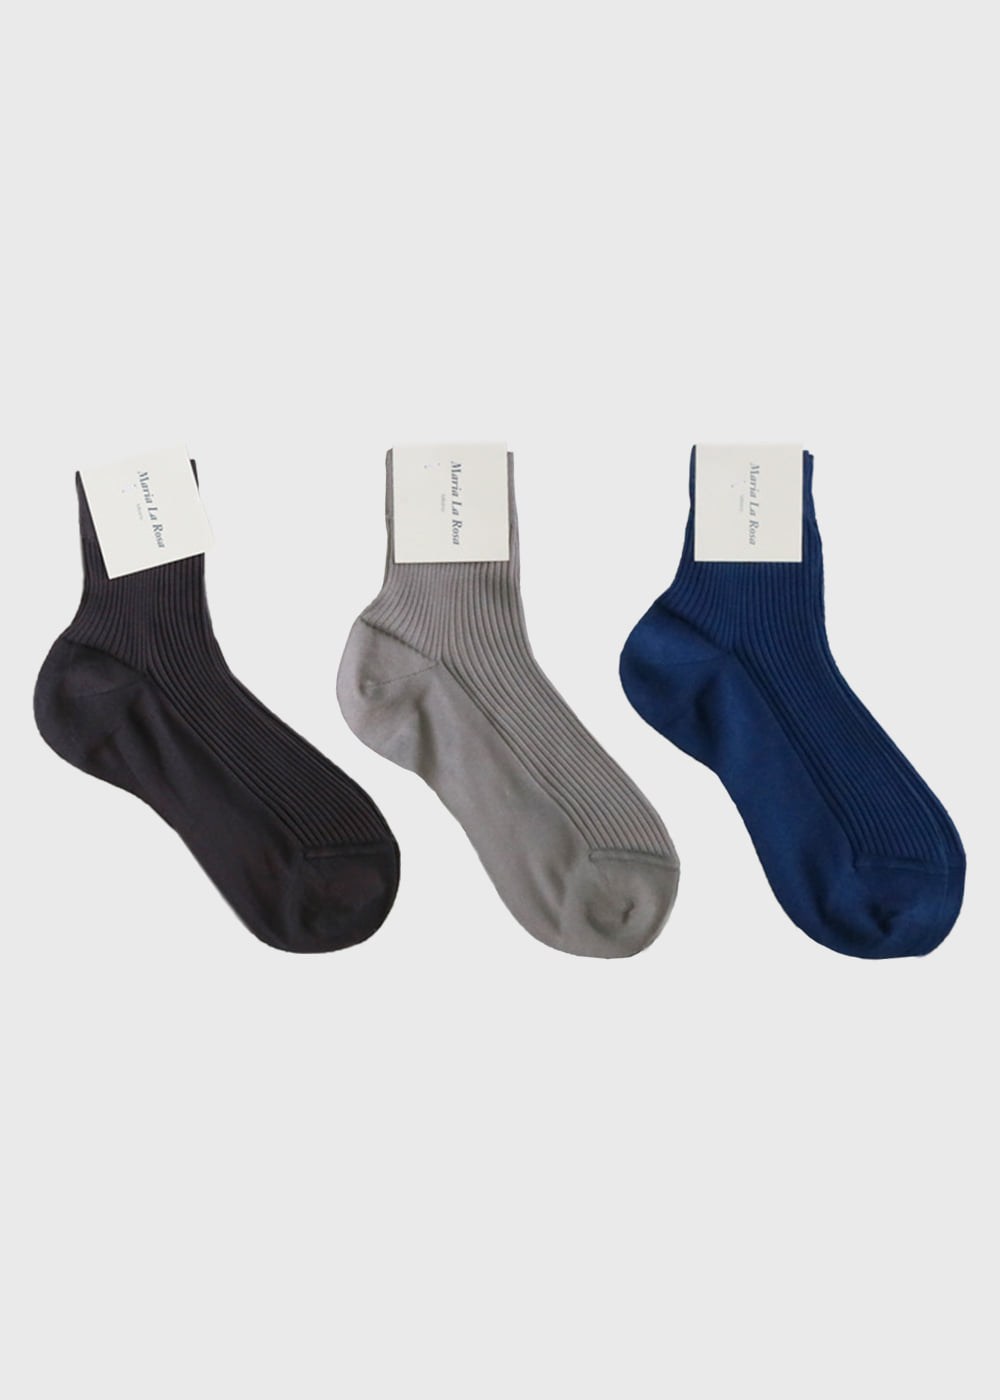 Ladies Ribbed Ankle Socks - 3 colors